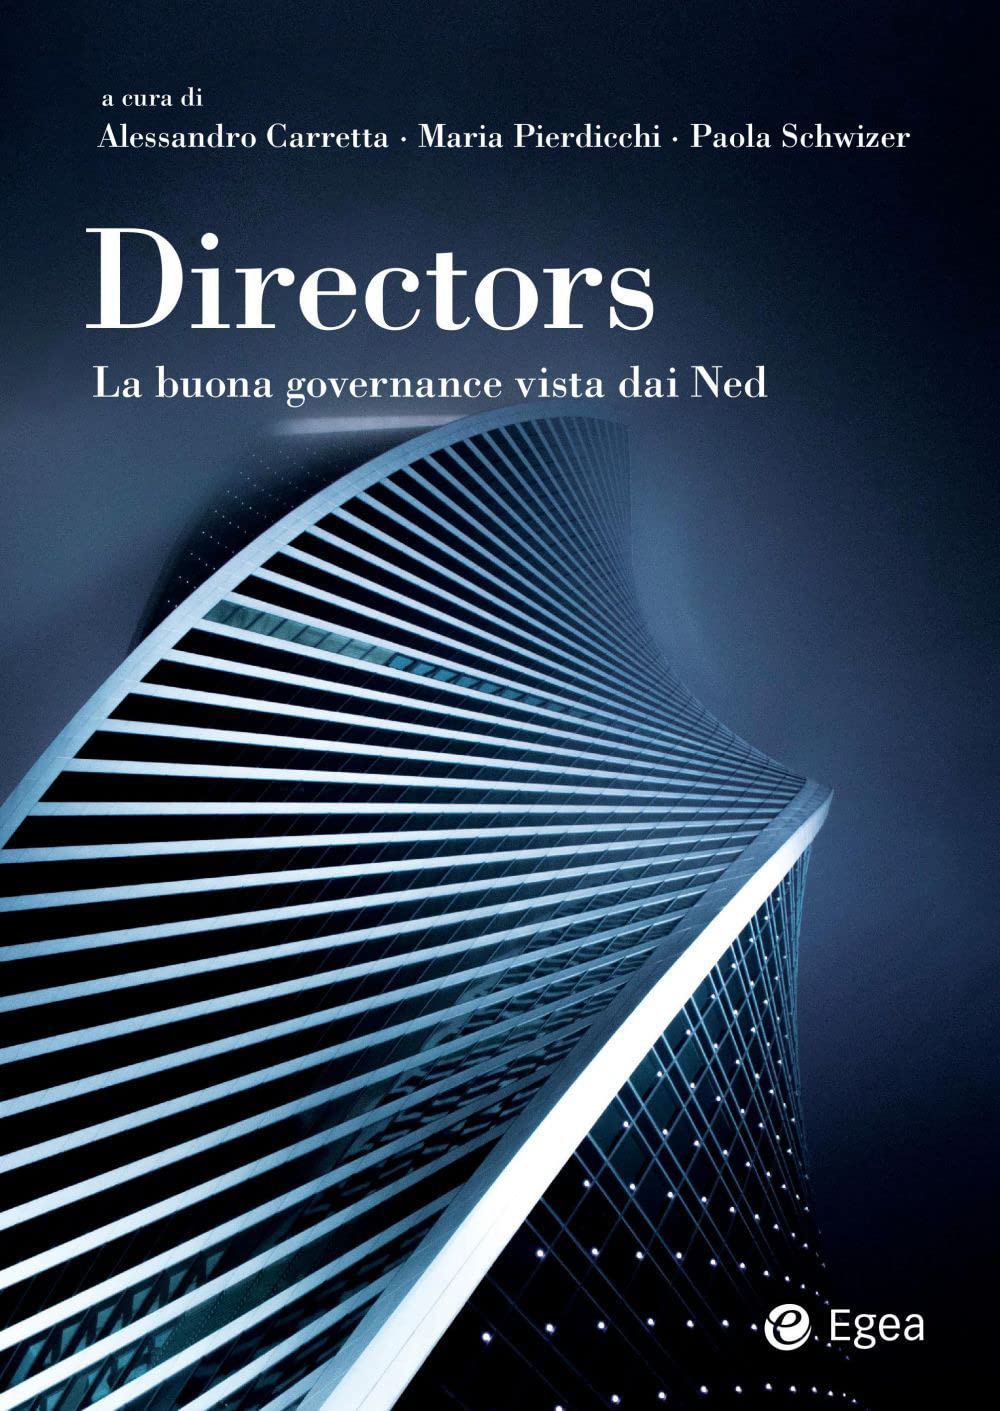 Pubblcato il libro: “Directors: la buona governance vista dai ned” – Sconto per gli Associati